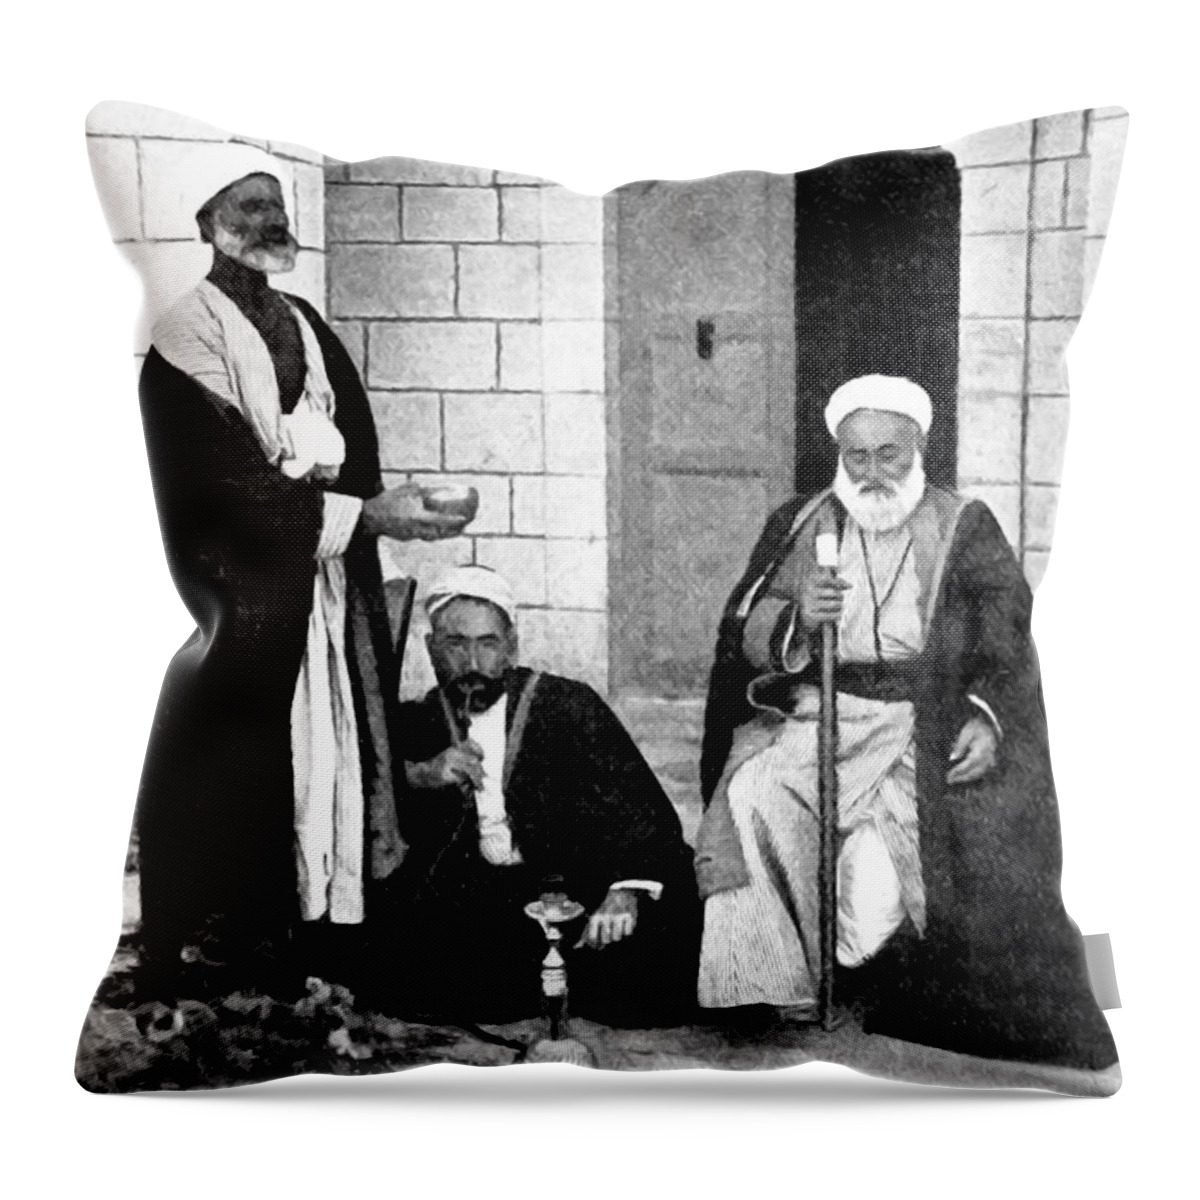 Beggar Throw Pillow featuring the photograph The Beggar by Munir Alawi